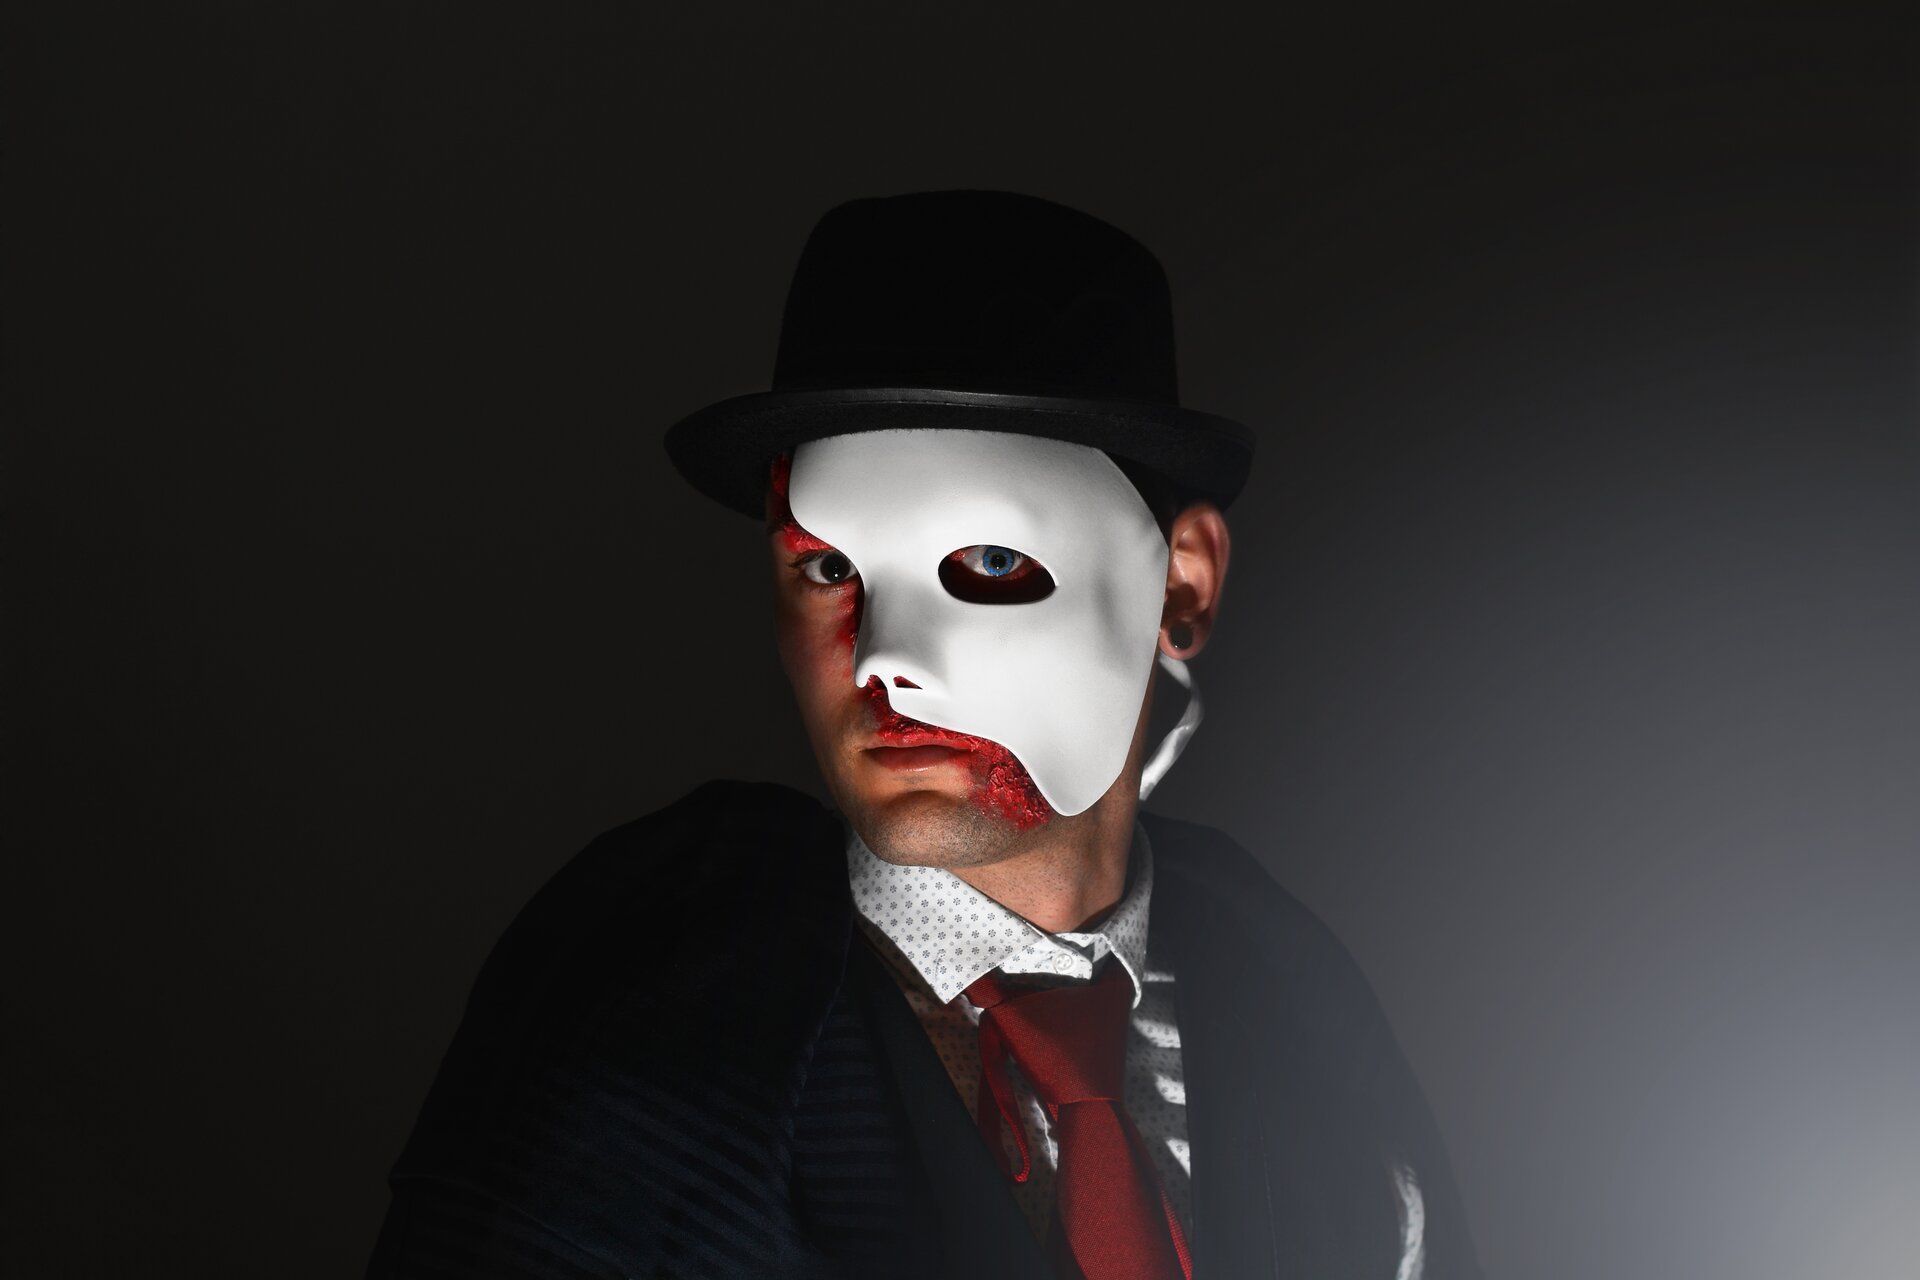 Ilustracja przedstawia zdjęcie aktora wcielającego się w postać musicalową. Na ciemnym tle widnieje portret mężczyzny w meloniku z białą maską, zasłaniającą połowę twarzy. Postać ubrana jest w ciemny płaszcz, jasną koszulę oraz czerwony krawat.